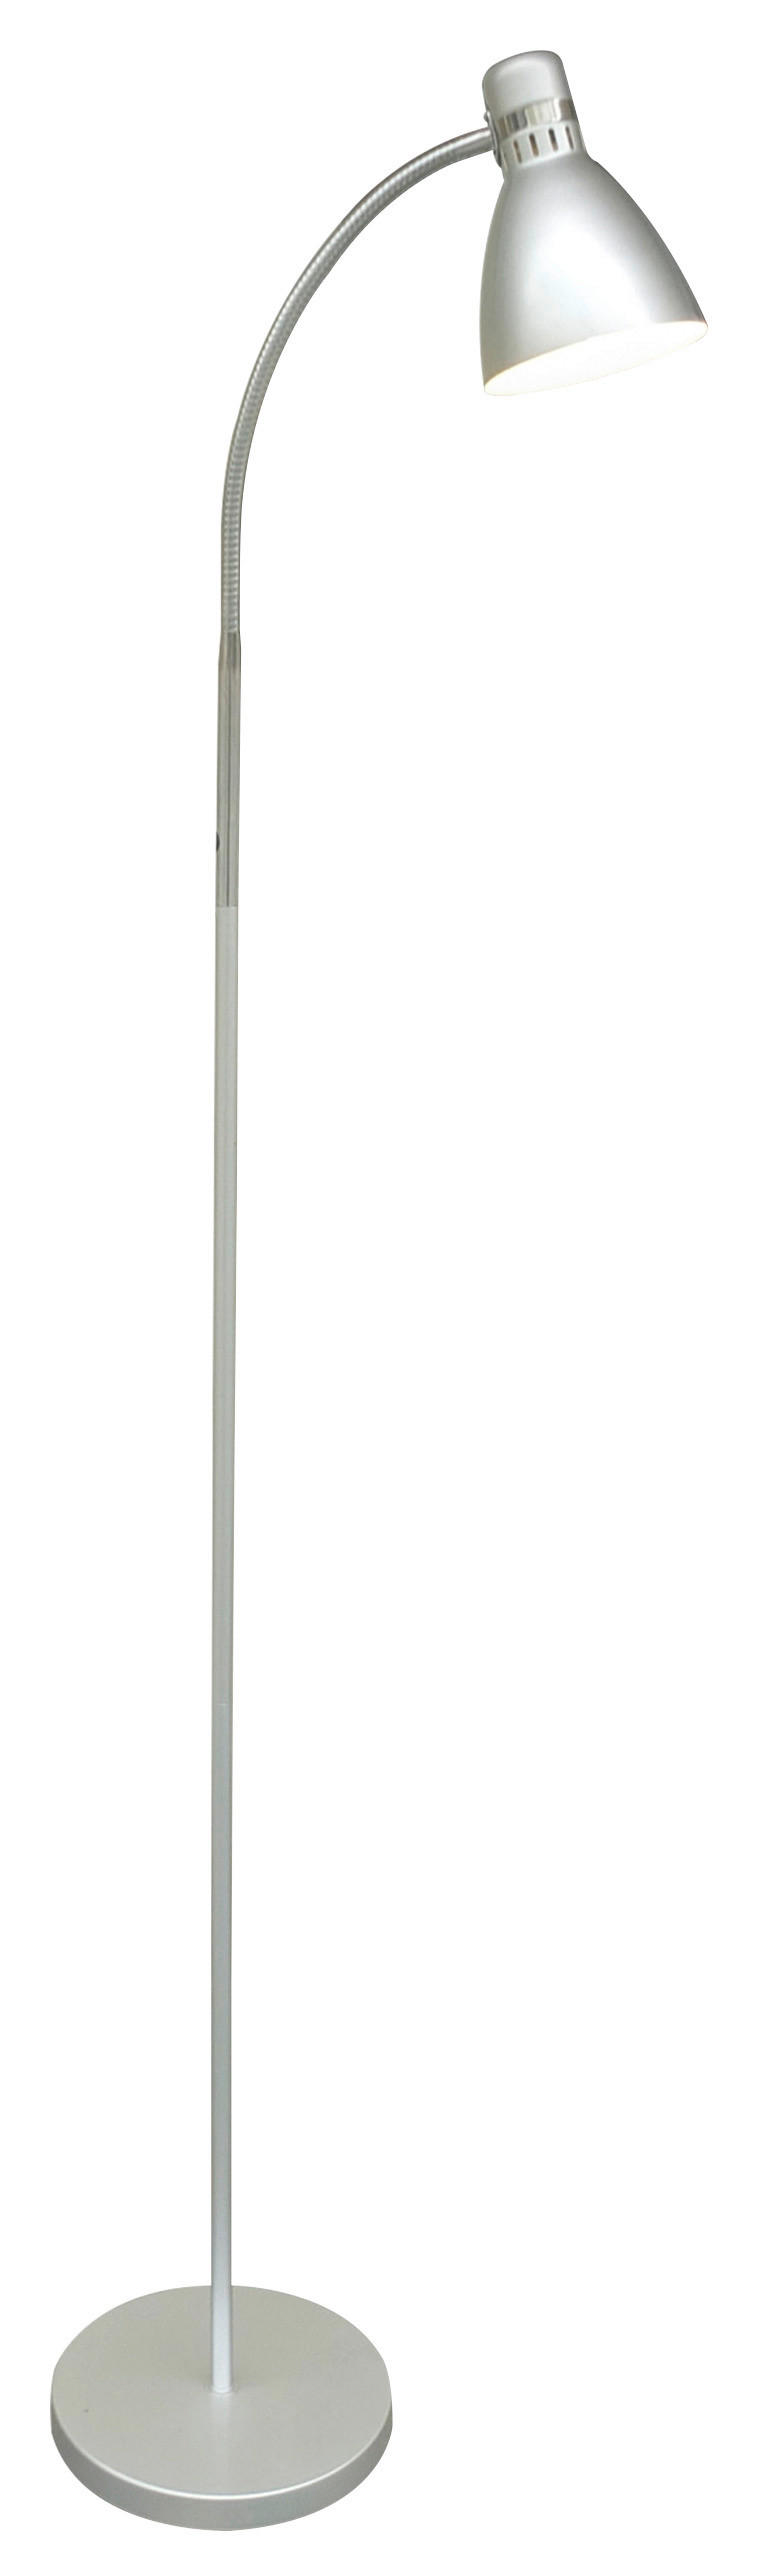 STOJACIA LAMPA, 22/155 cm  - farby strieborného duba/strieborná, Basics, kov/plast (22/155cm) - Boxxx